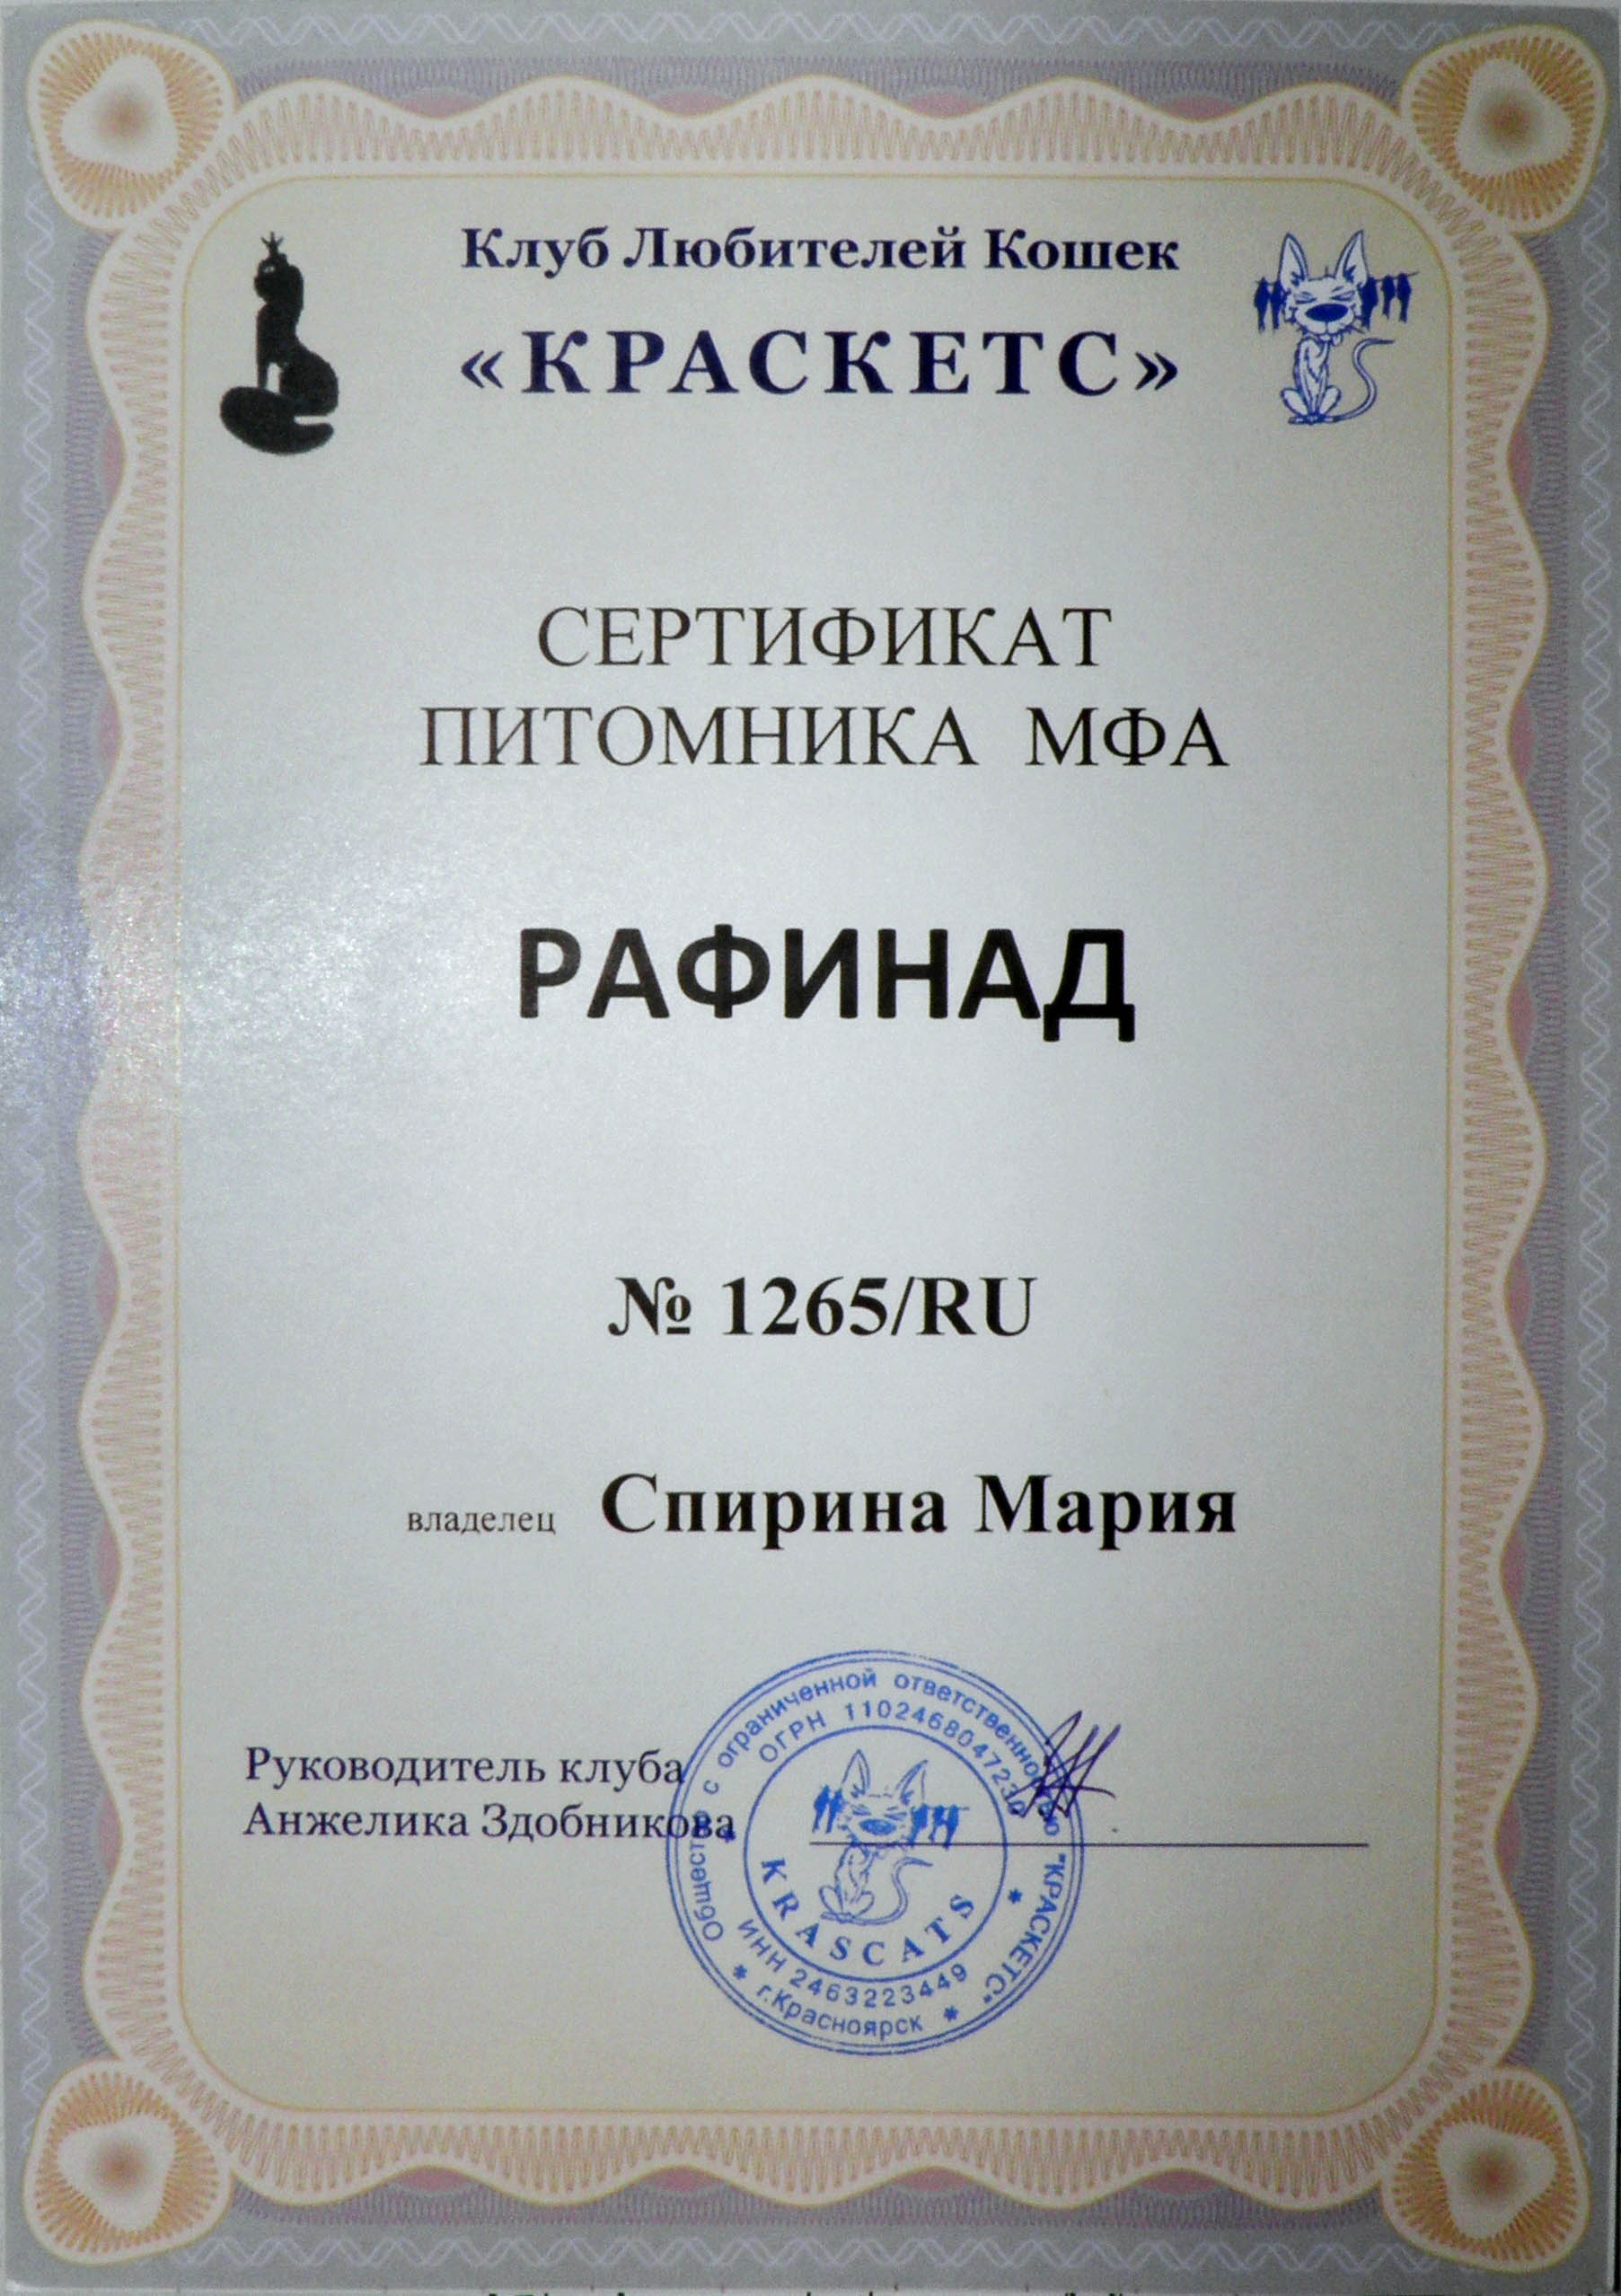 Сертификат питомника Рафинад в МФА